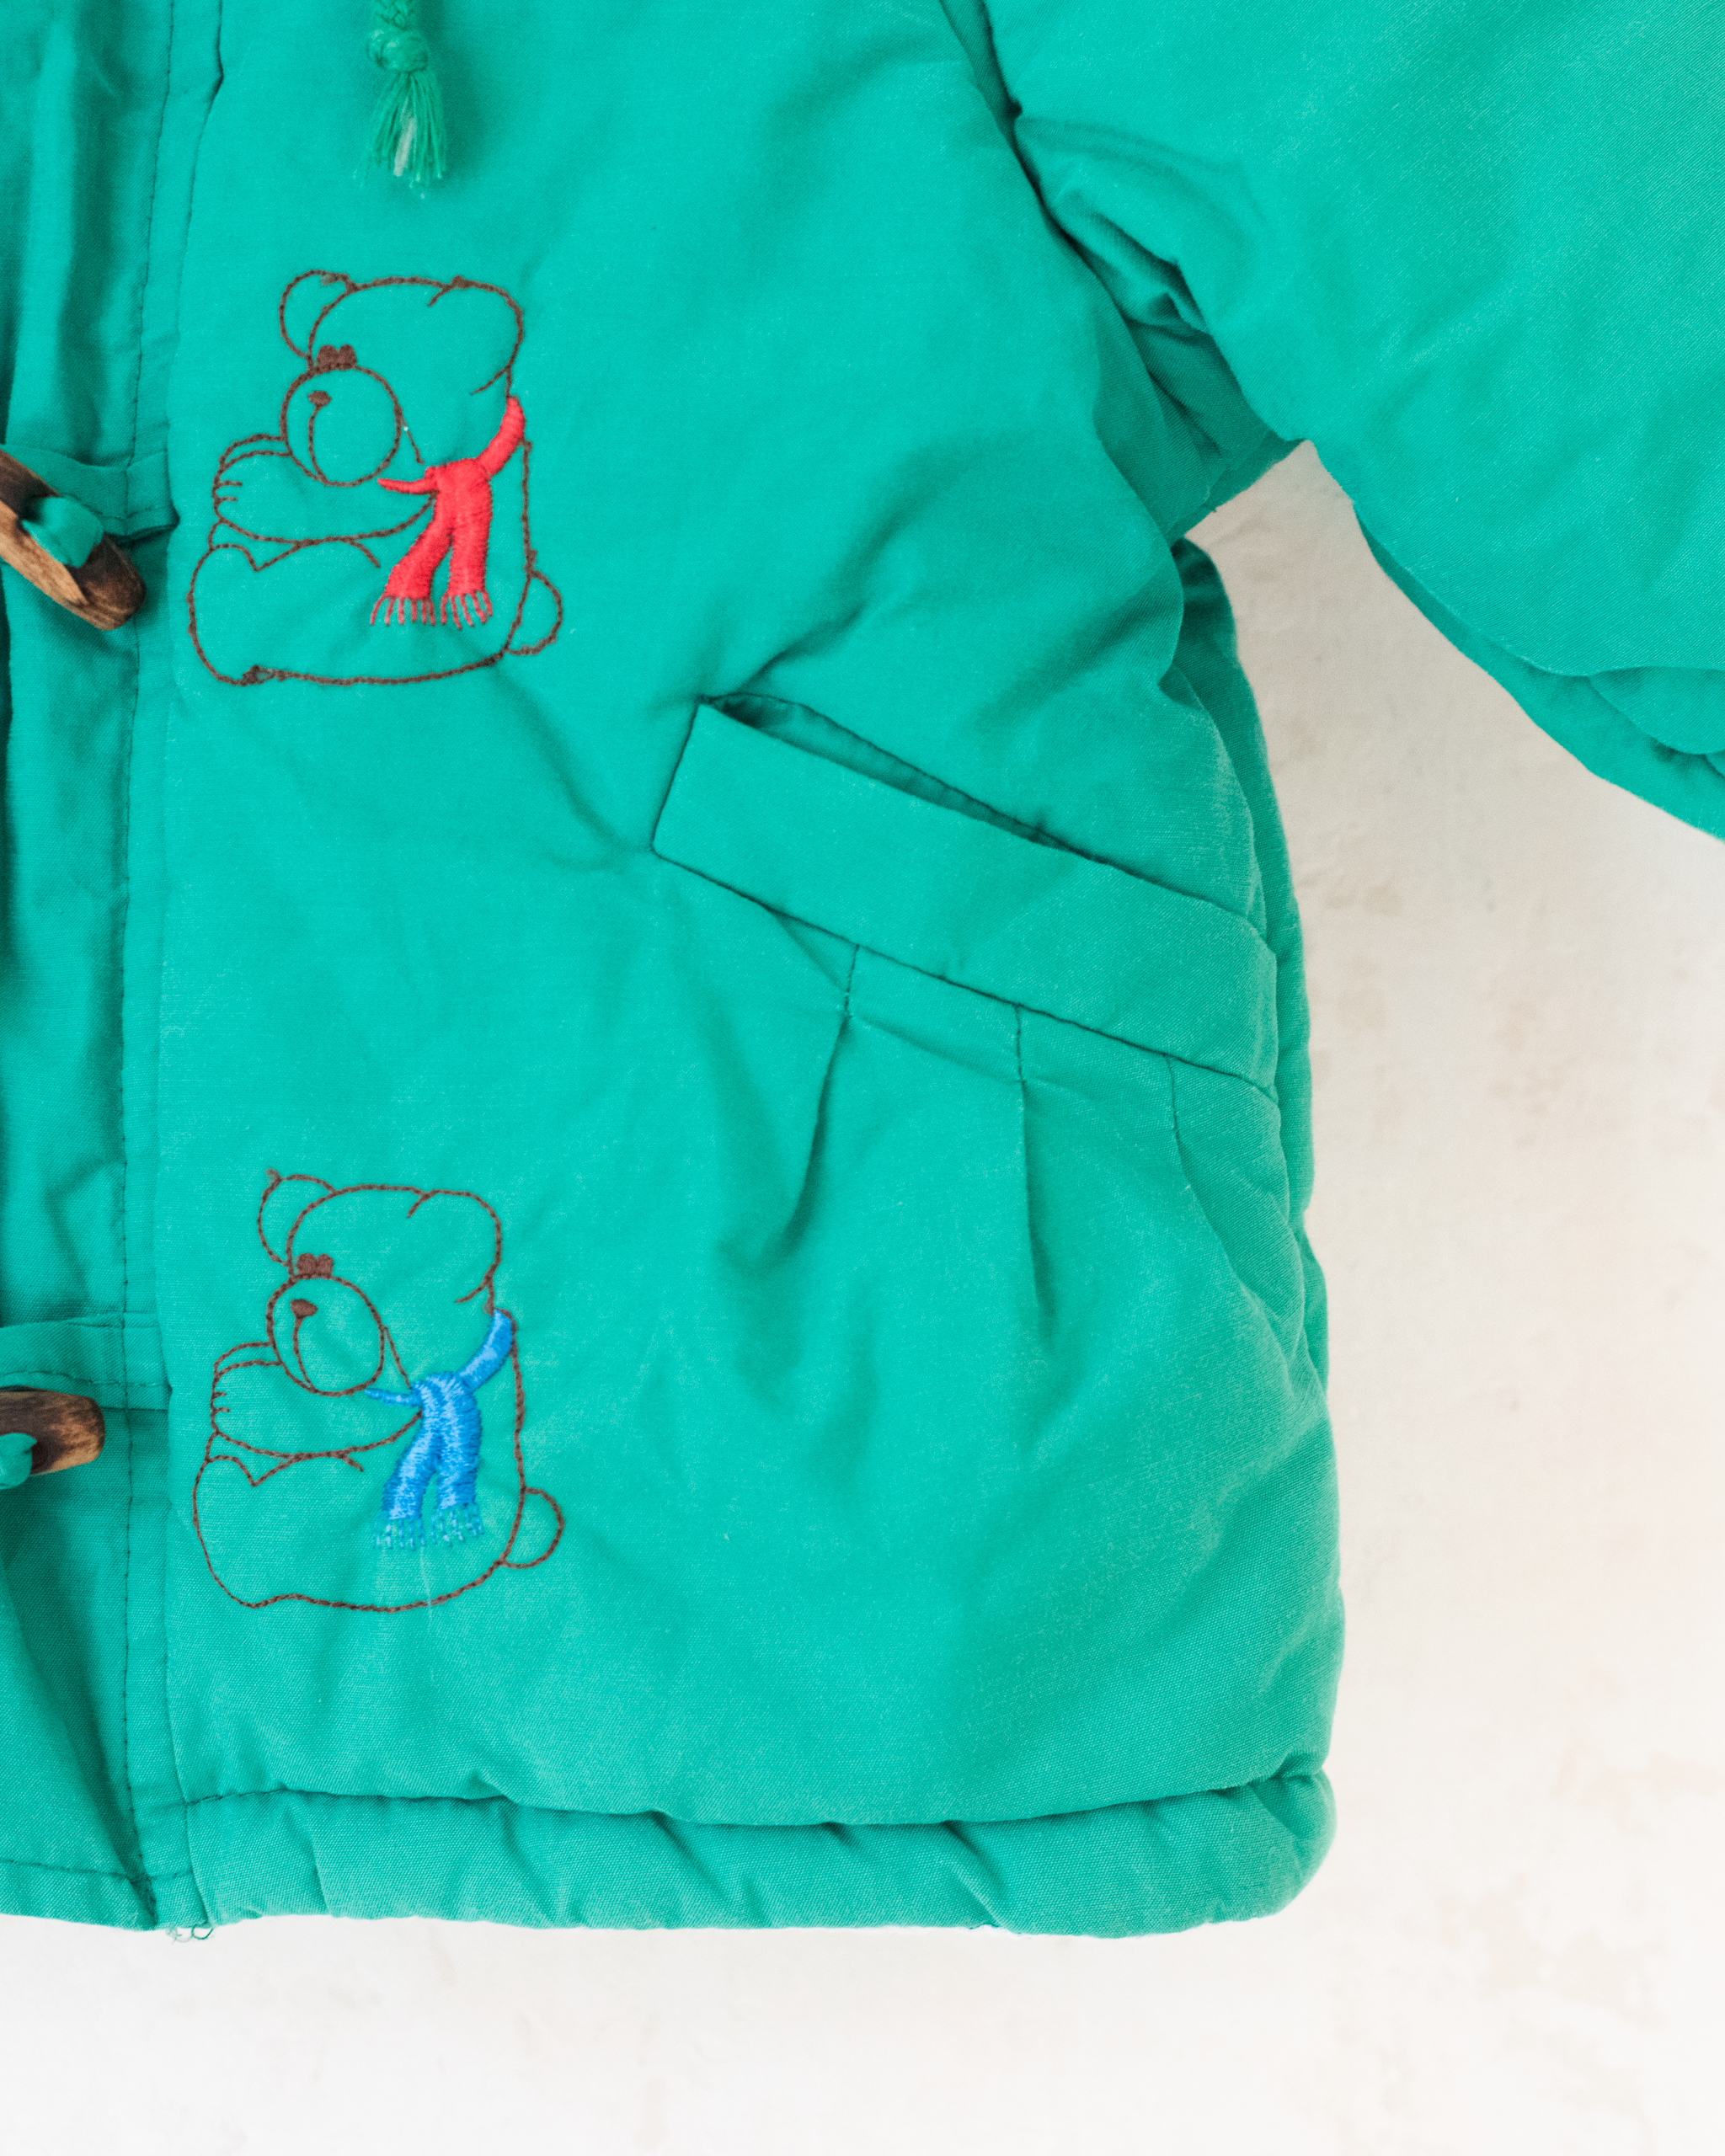 מעיל וינטג׳ פוך ירוק עם דובים | 12-18 חודשים